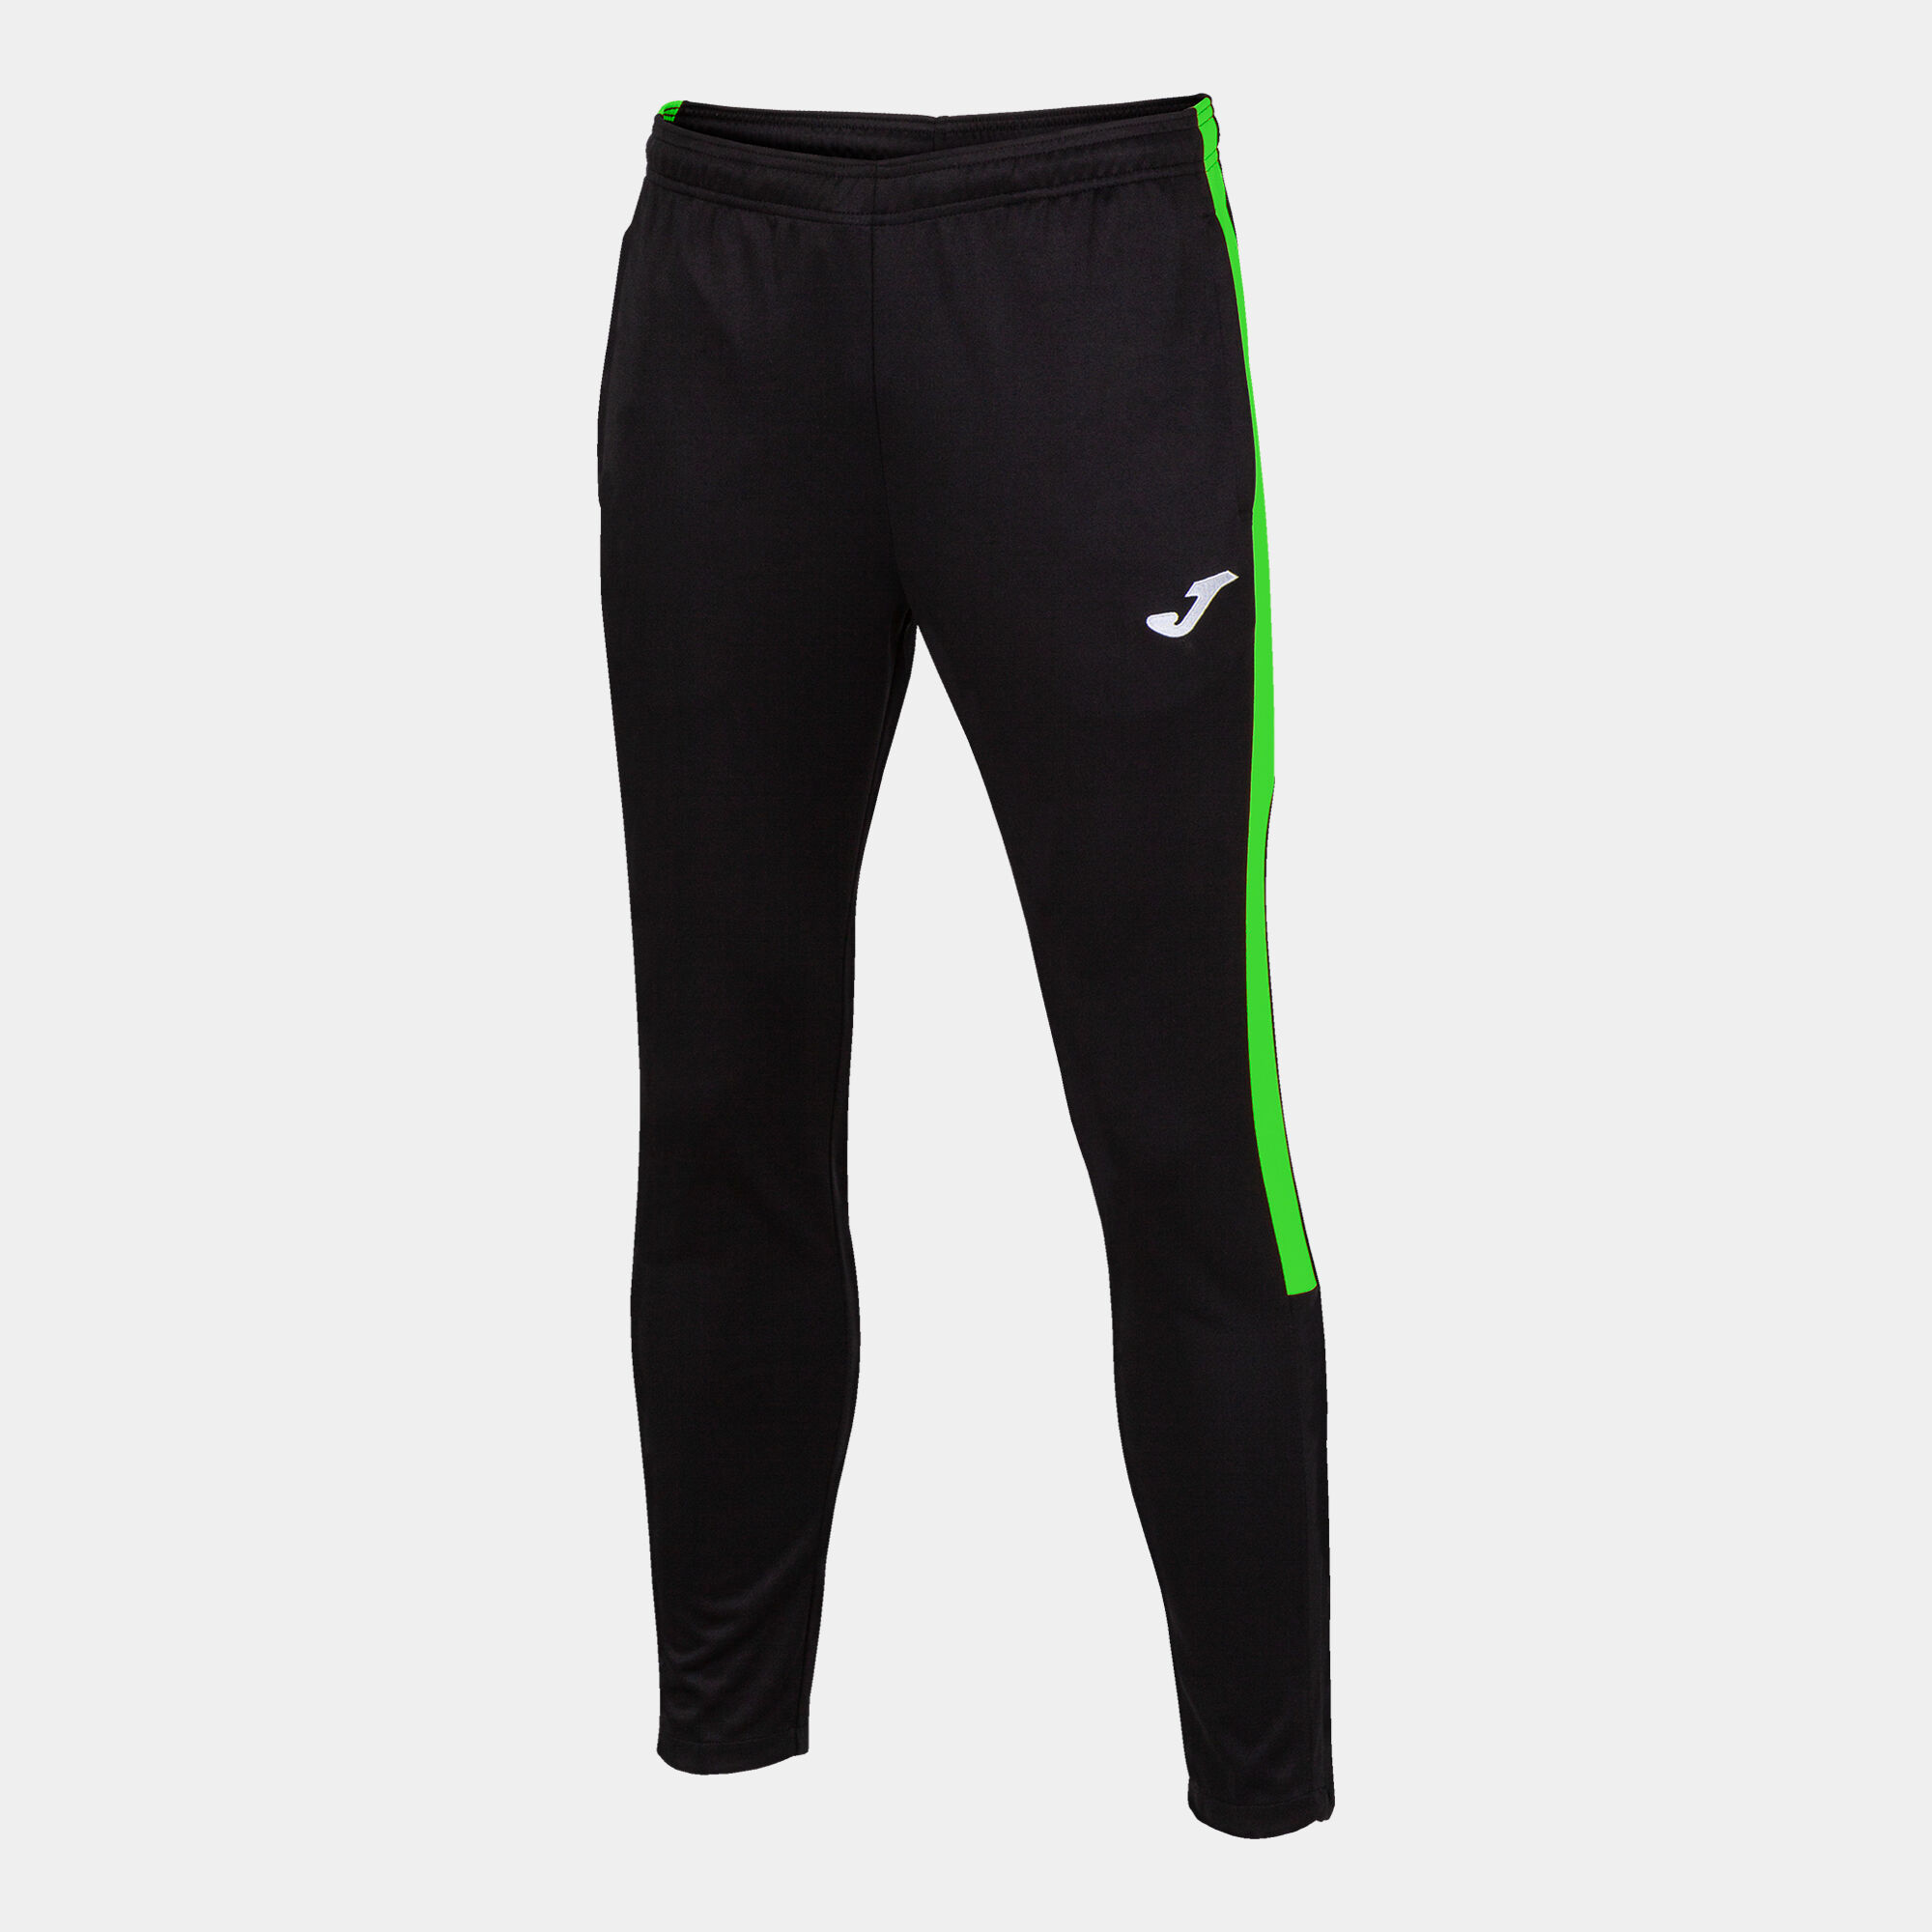 Pantalone lungo uomo Eco Championship nero verde fluorescente